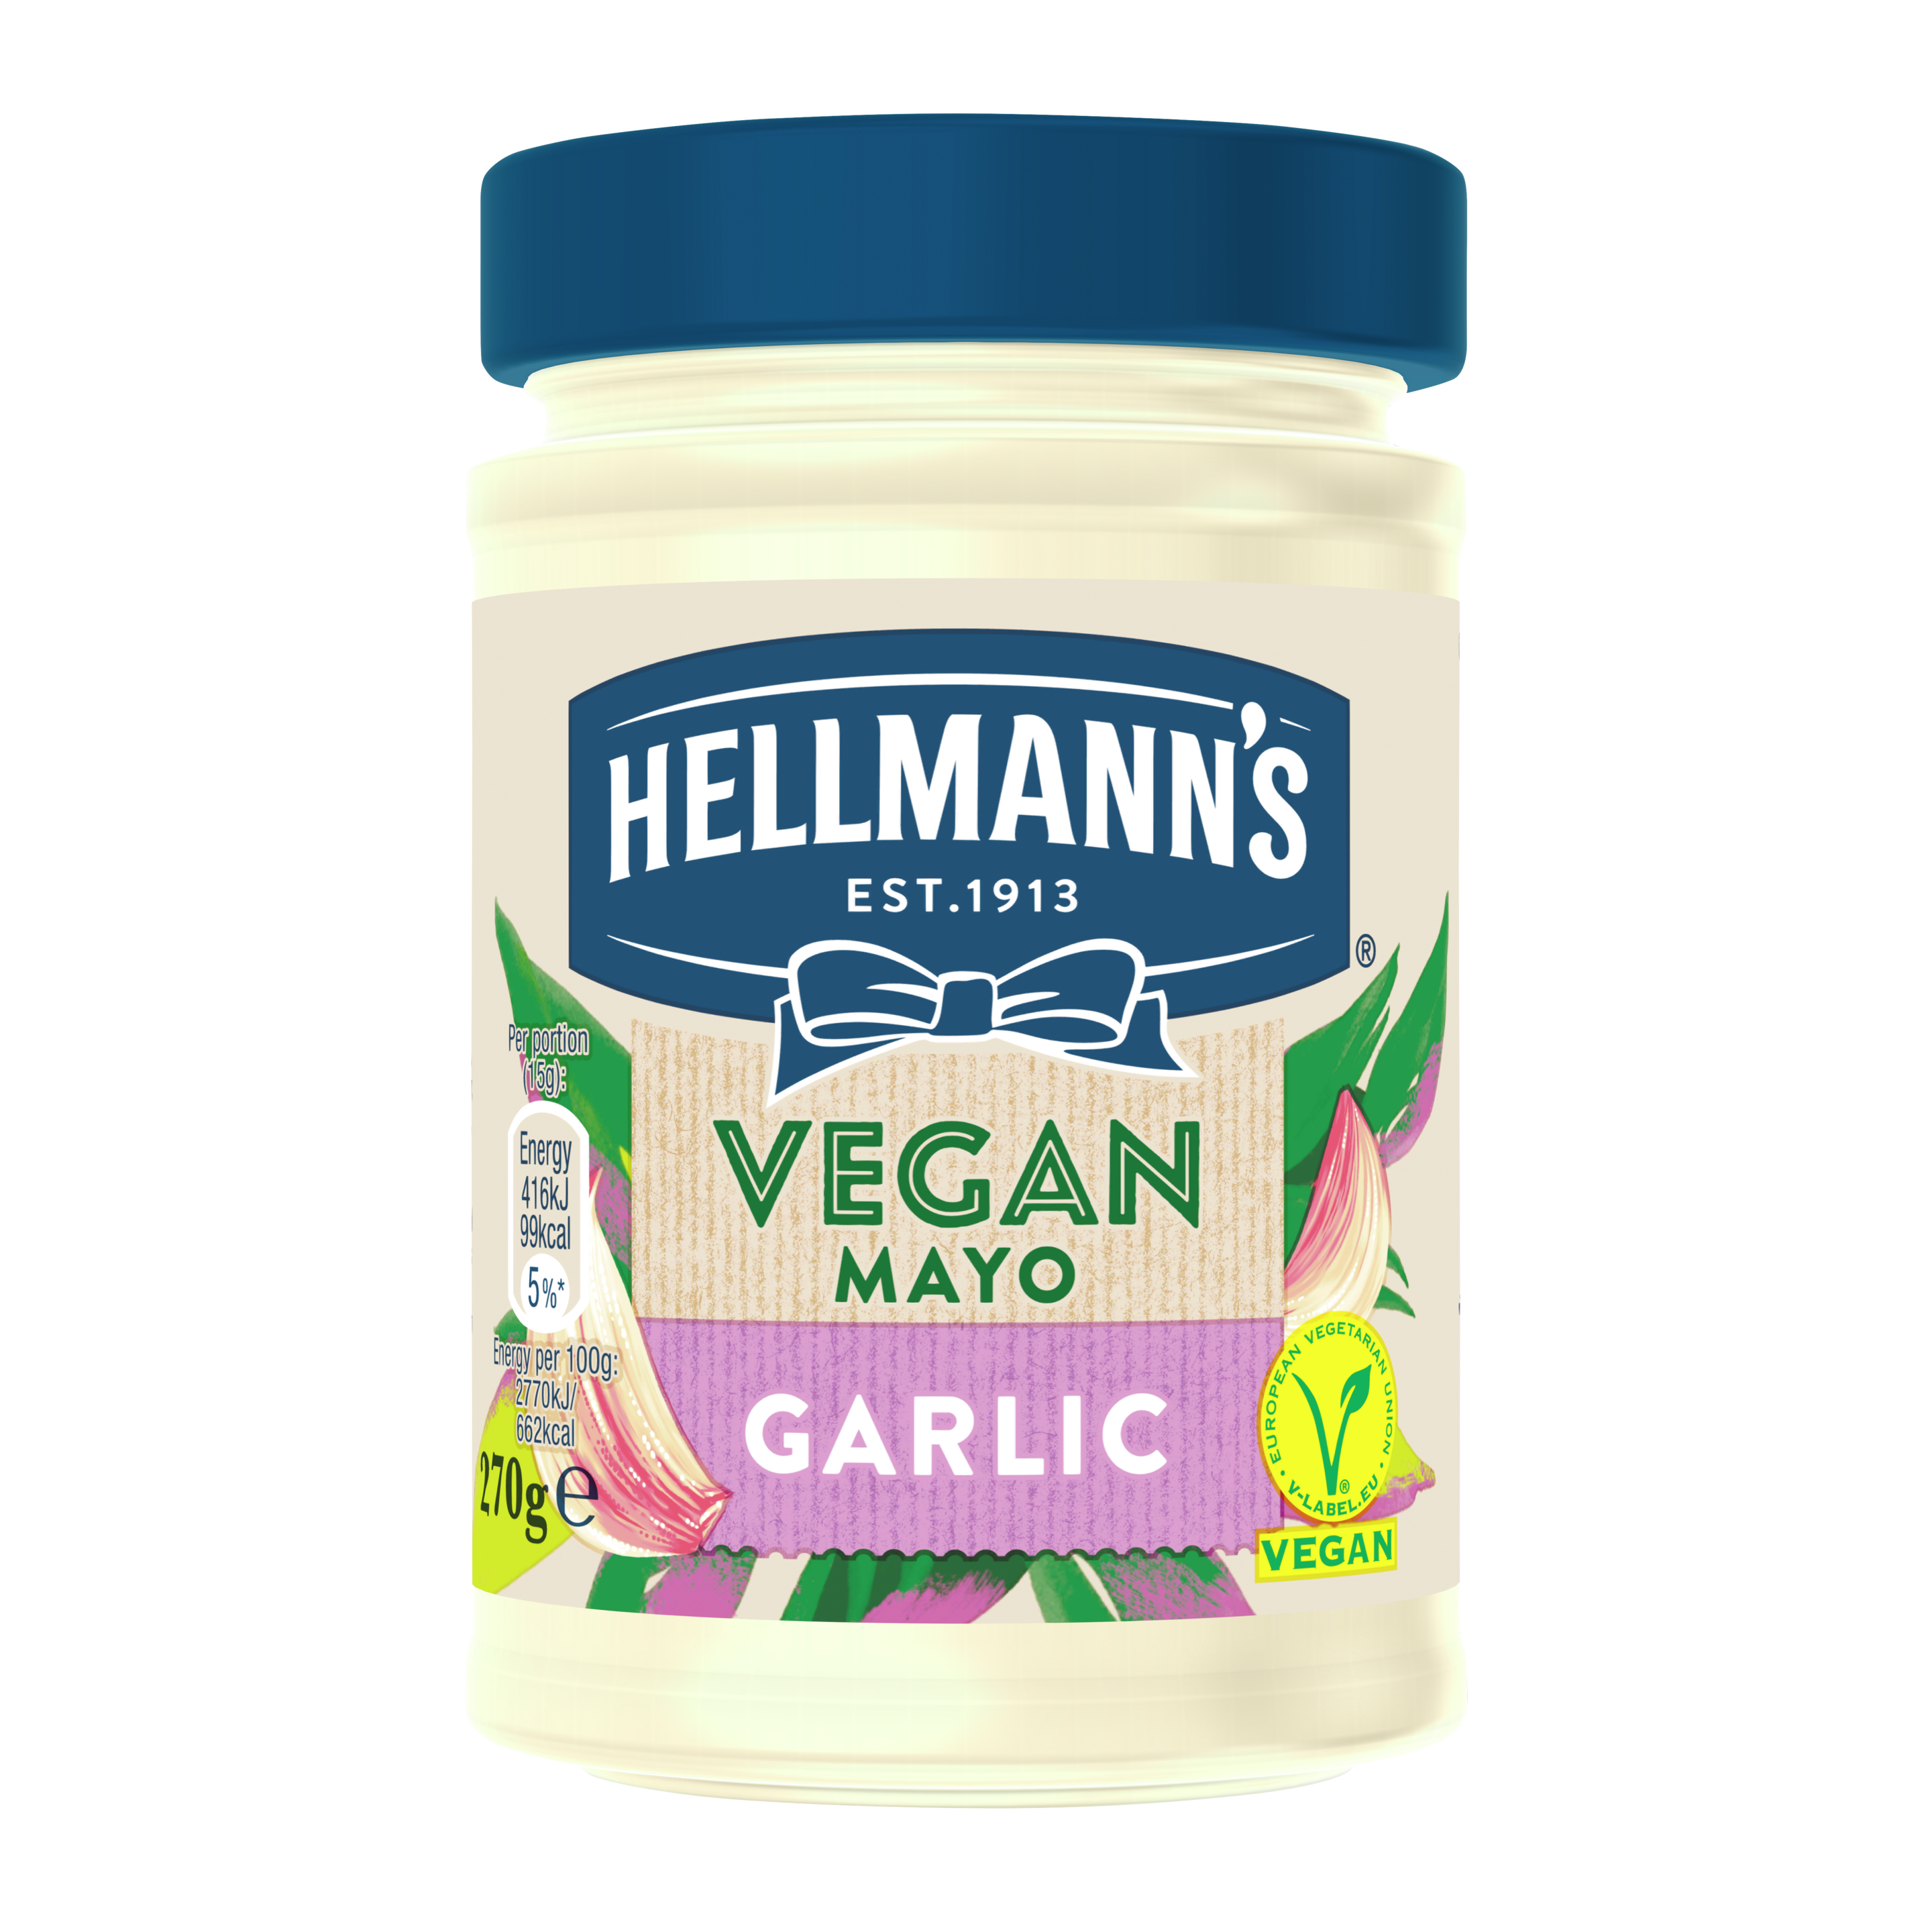 Hellmann's Vegan Garlic Mayo